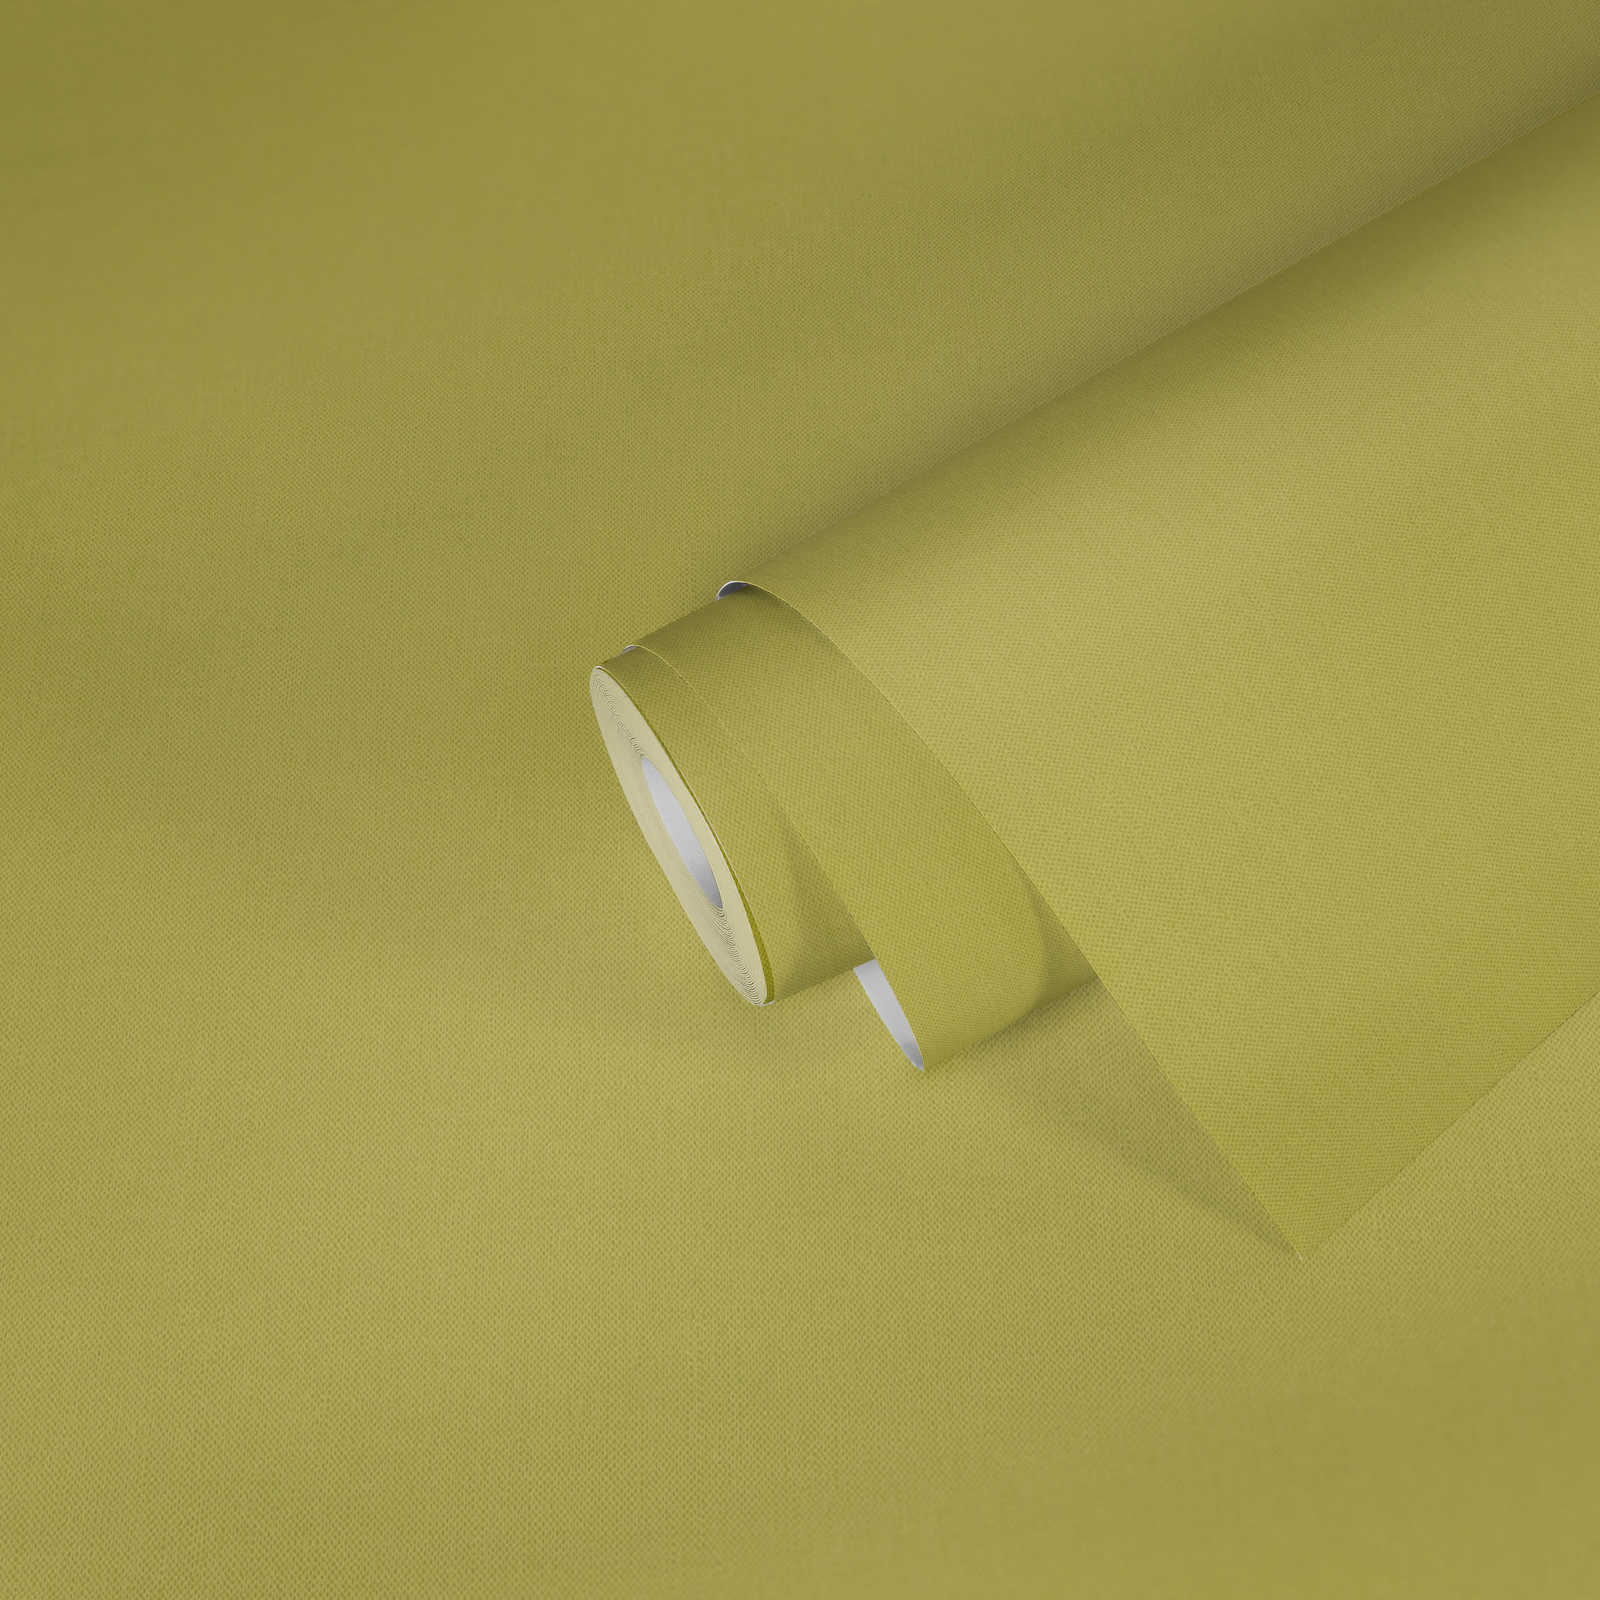             Papier peint vert clair uni mat vert tilleul avec structure textile
        